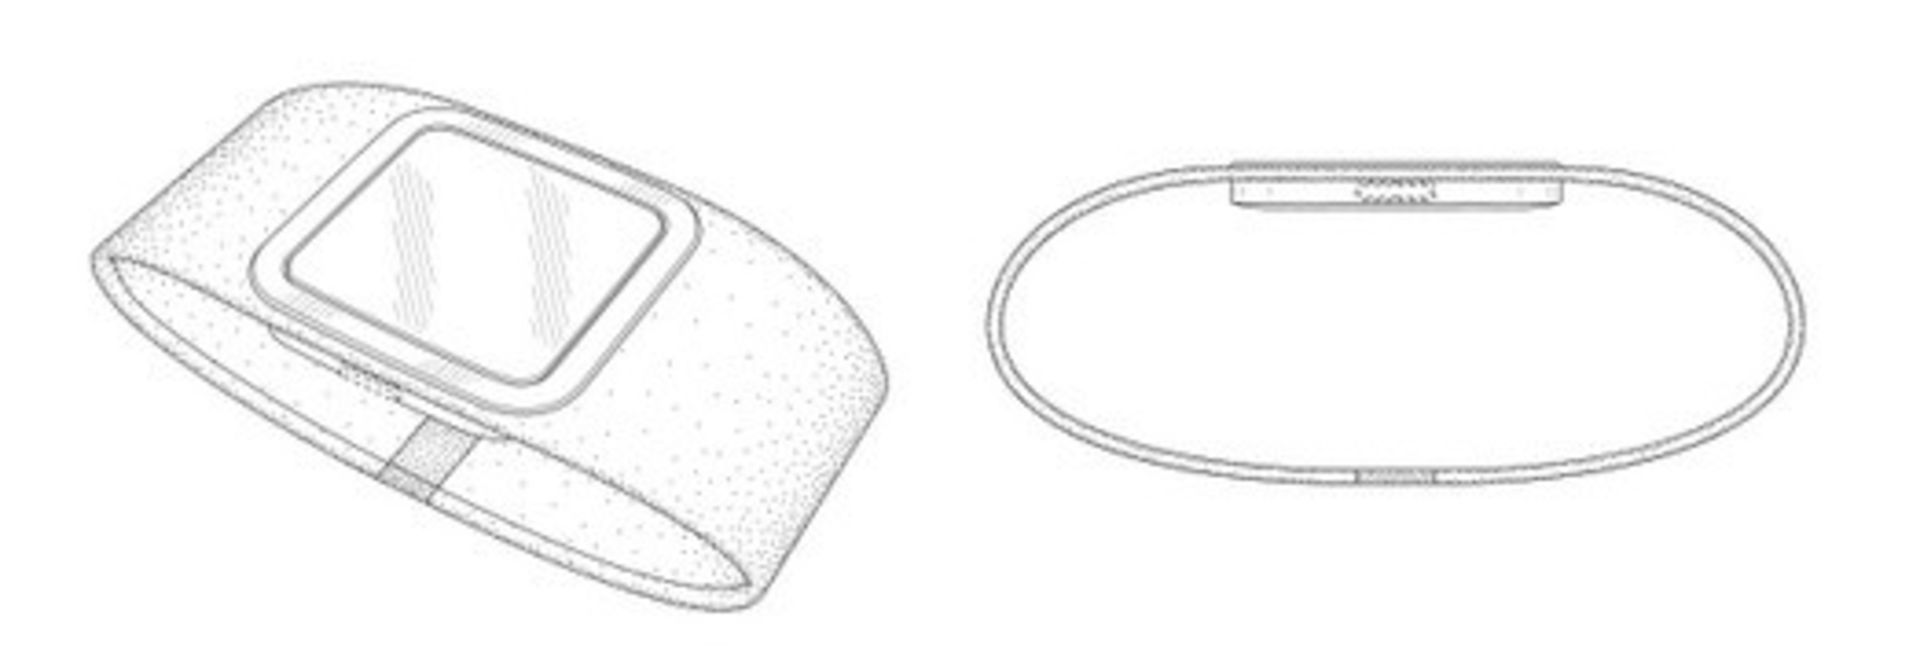 microsoft-smart-watch-patent